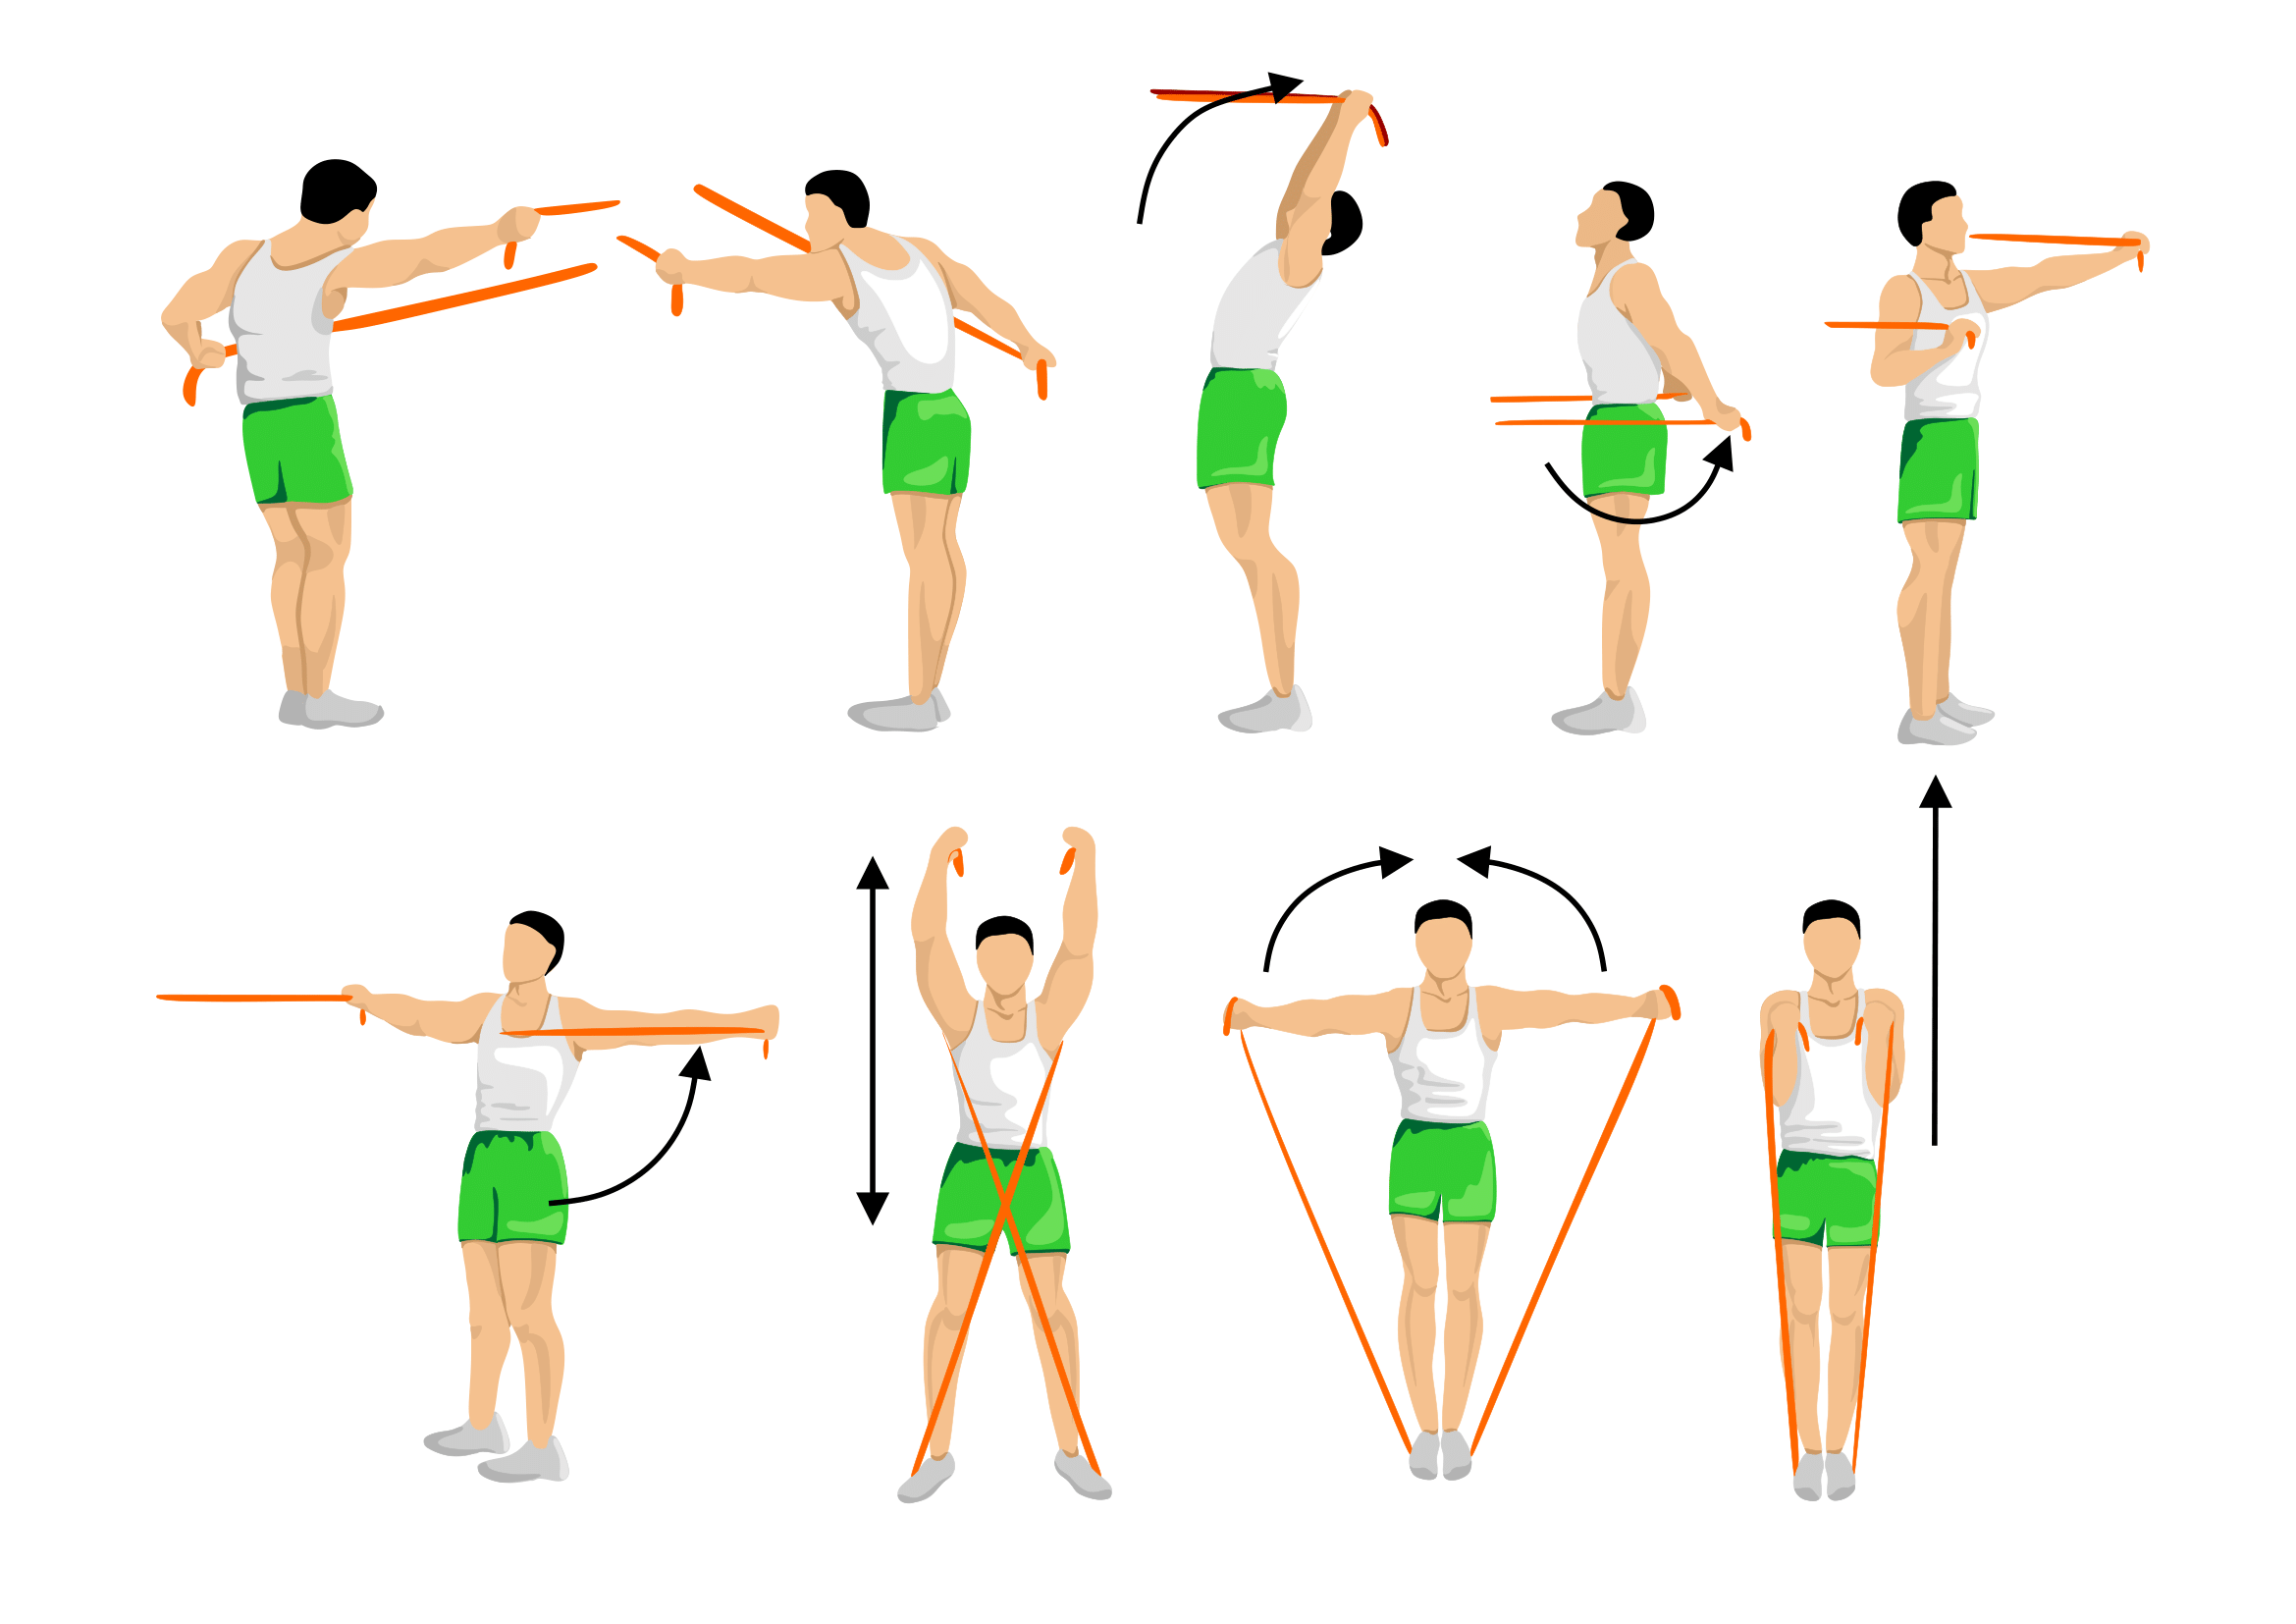 Упражнения с эспандером: комплекс эффективных упражнений для всего тела мужчинам и женщинам в домашних условиях (фото/видео)